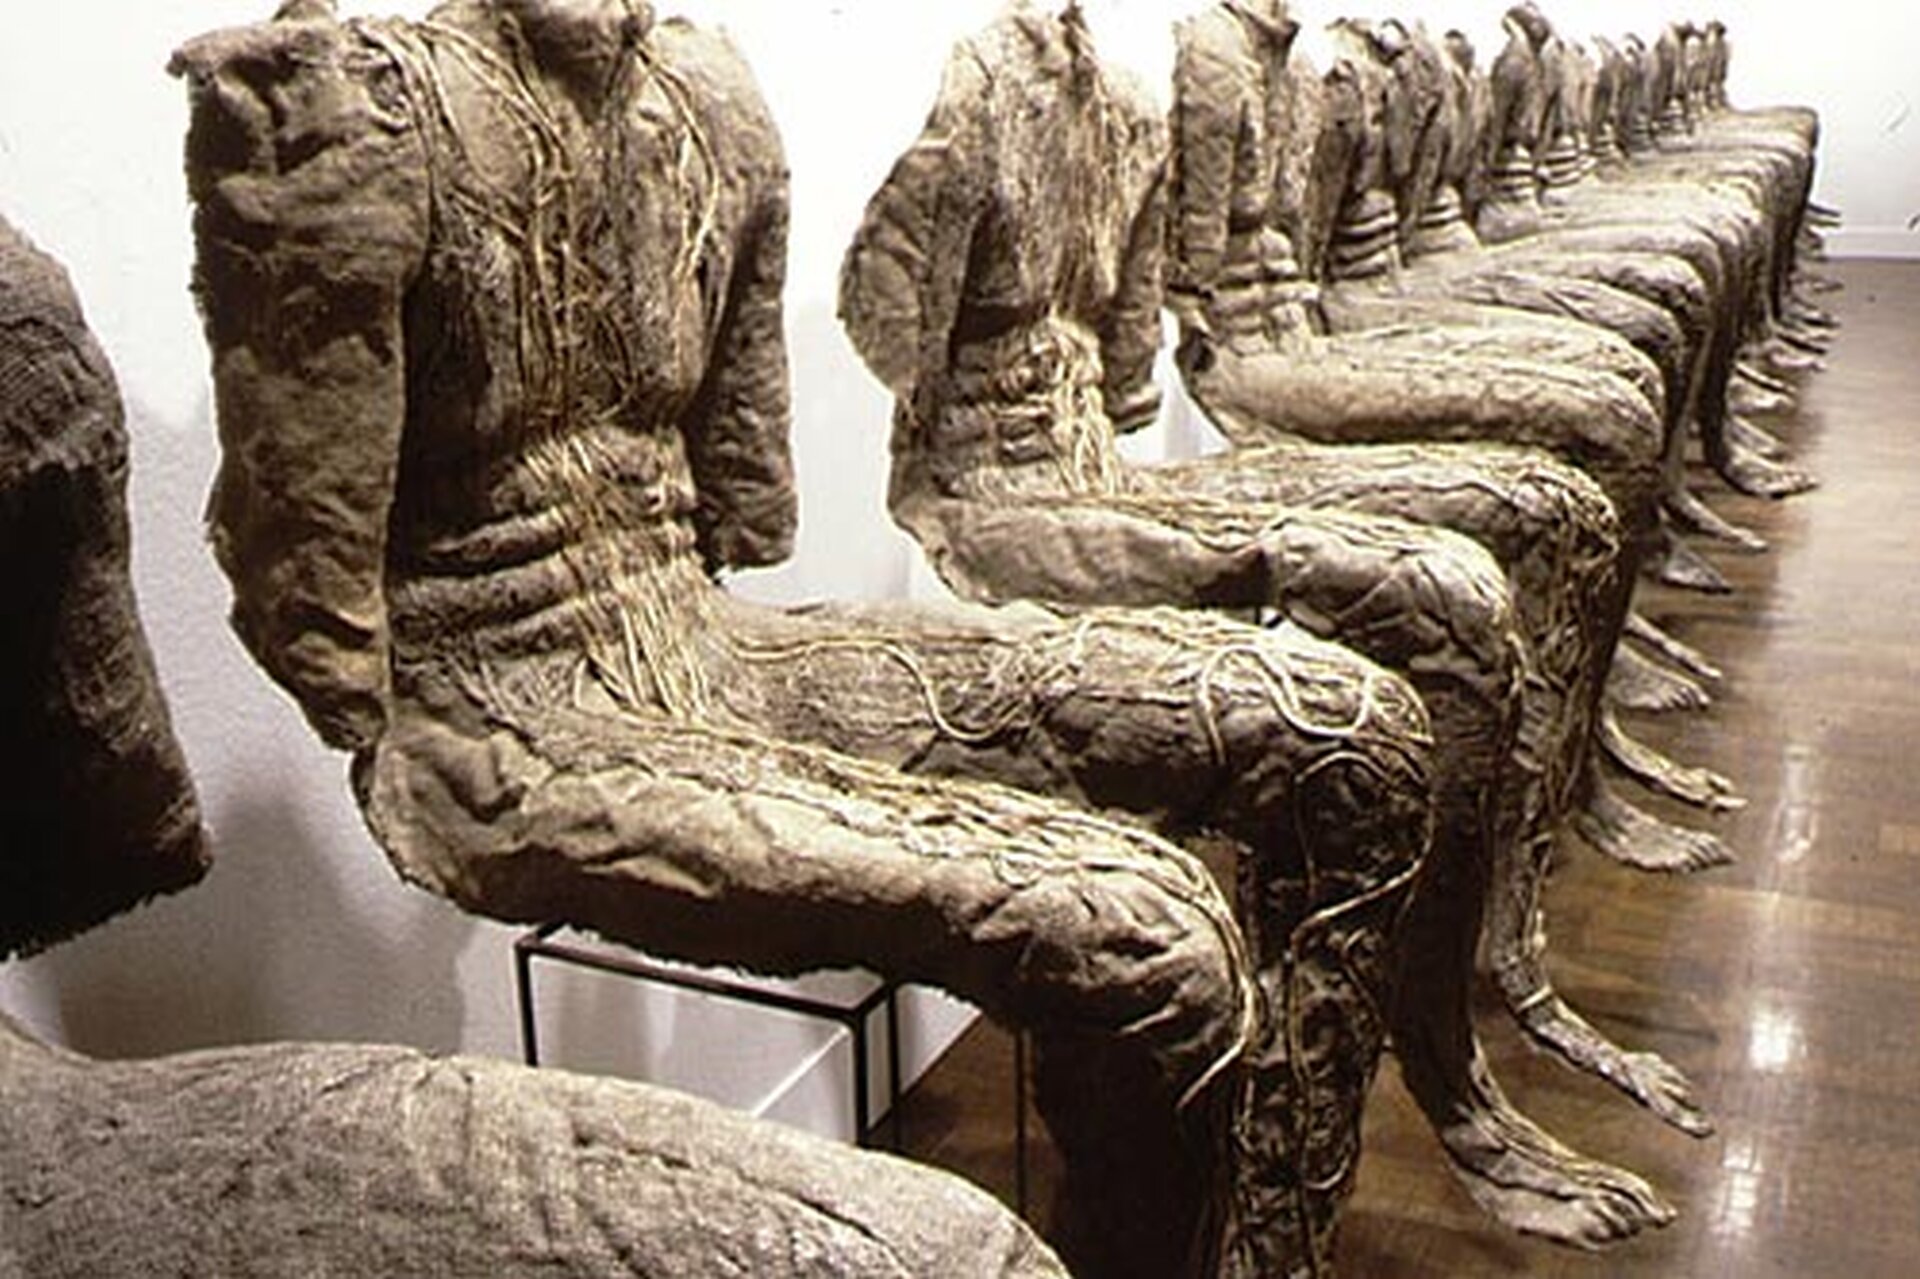 Ilustracja przedstawia instalację artystyczną składającą się z siedzących postaci, które nie mają głowy. Ręce postaci kończą się na wysokości łokcia. Stopy nie dotykają podłogi, zwisają nad nią.